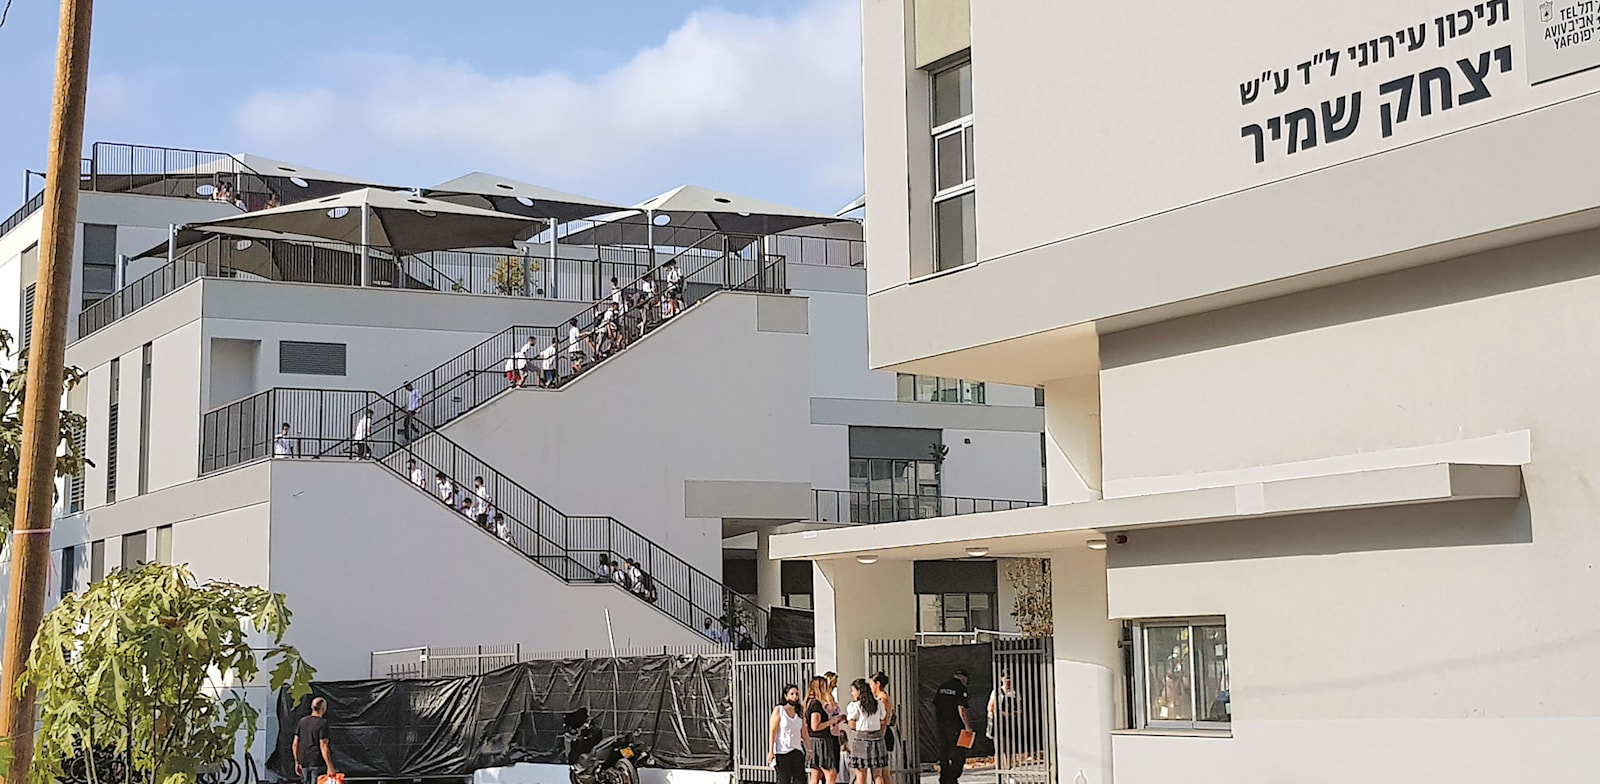 בית ספר יצחק שמיר, תל אביב / צילום: לקנר אדריכלים